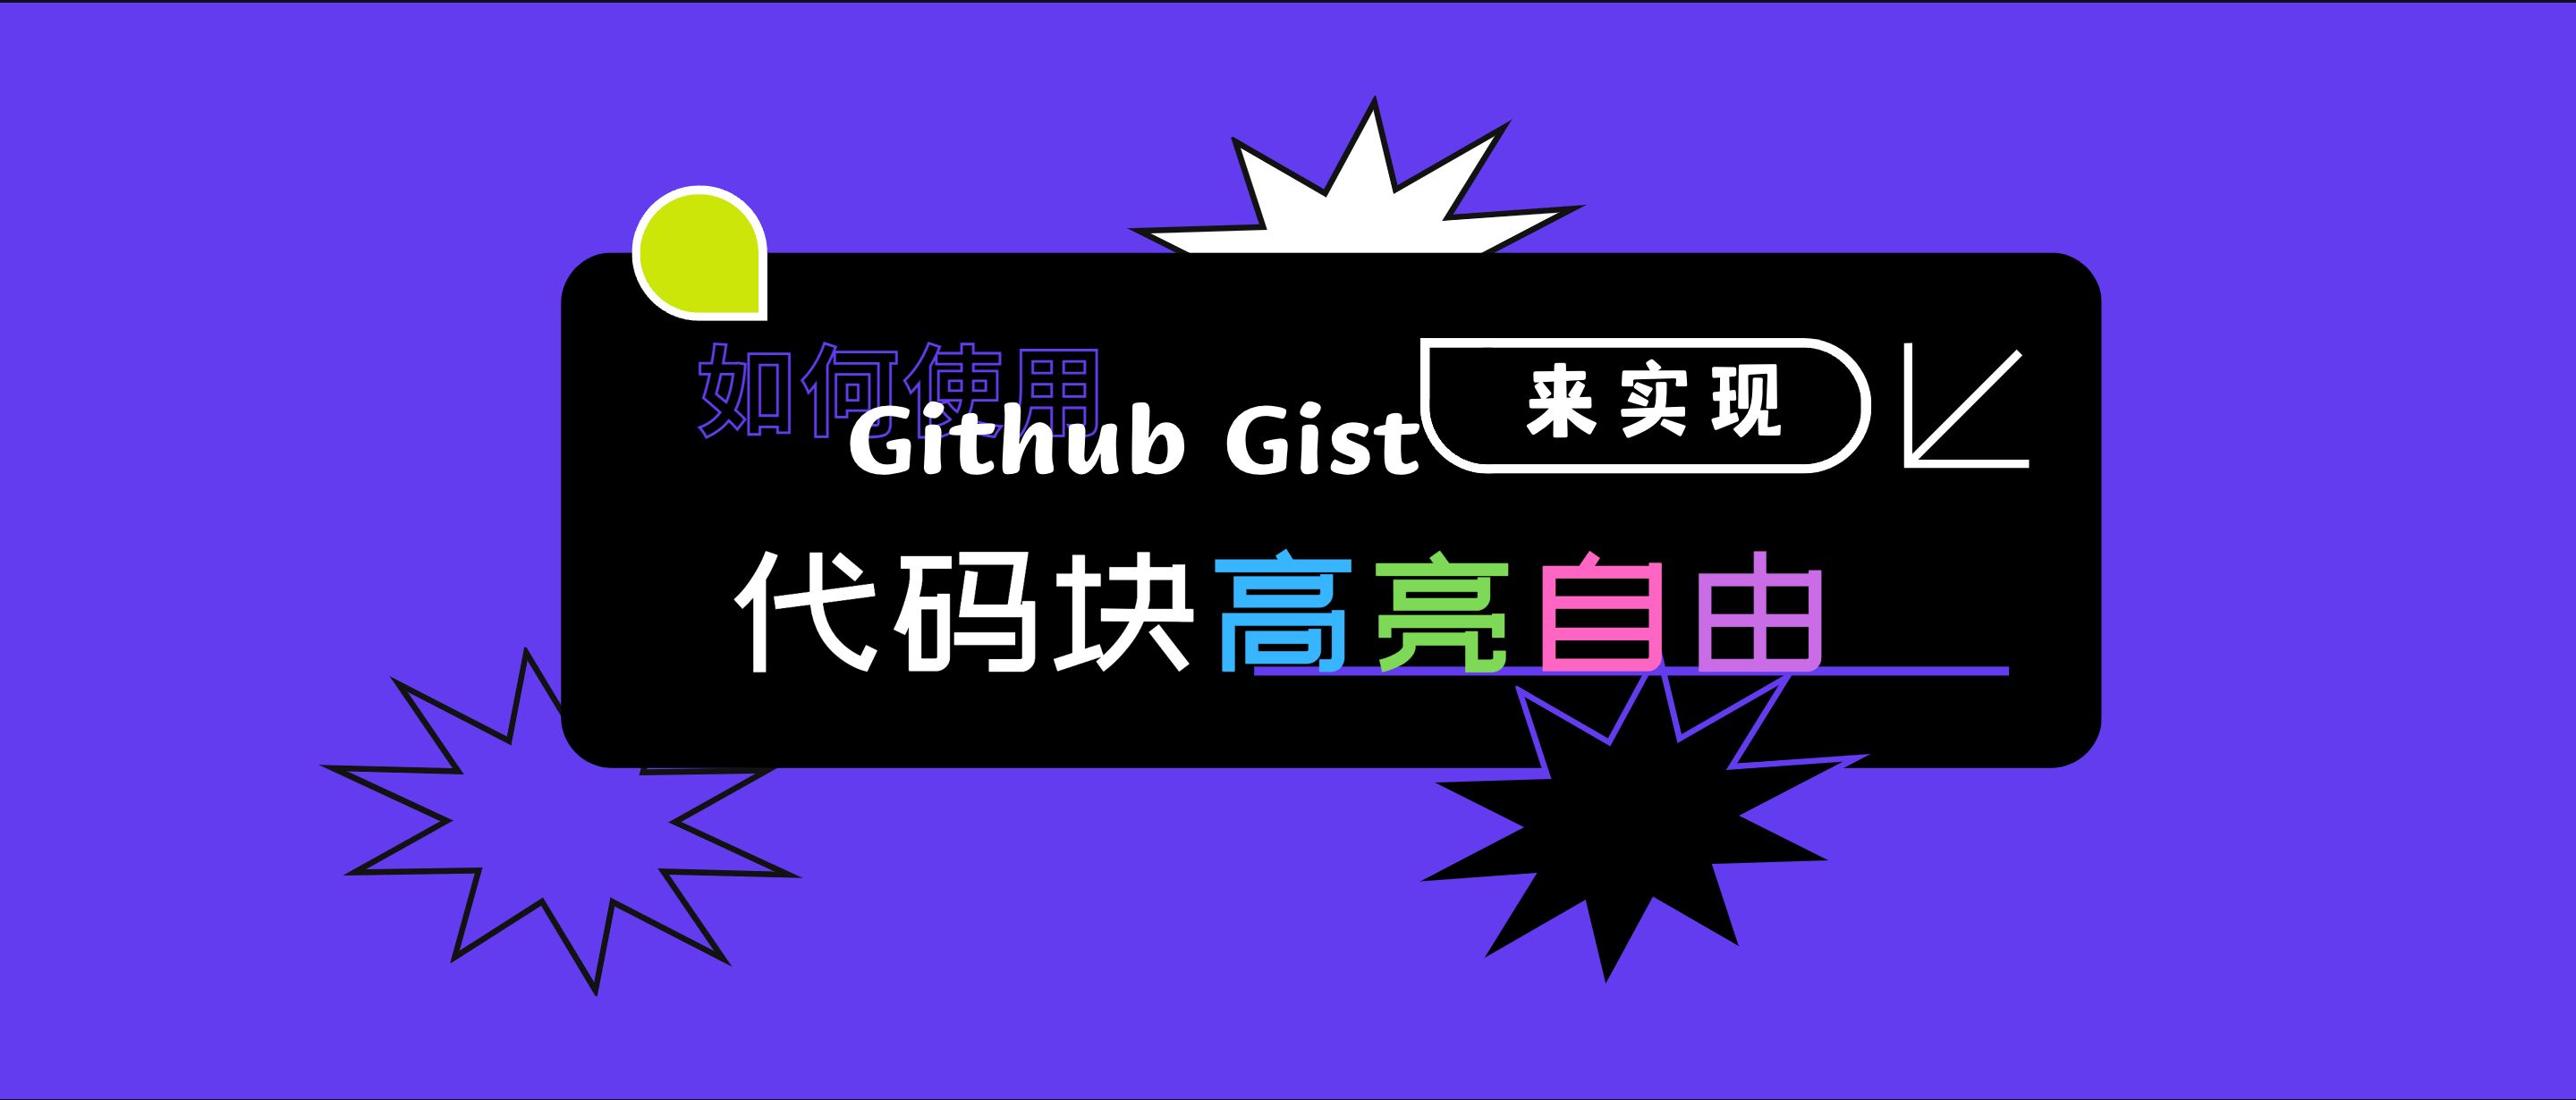 归档 | 如何使用 Github Gist 来实现代码块高亮自由